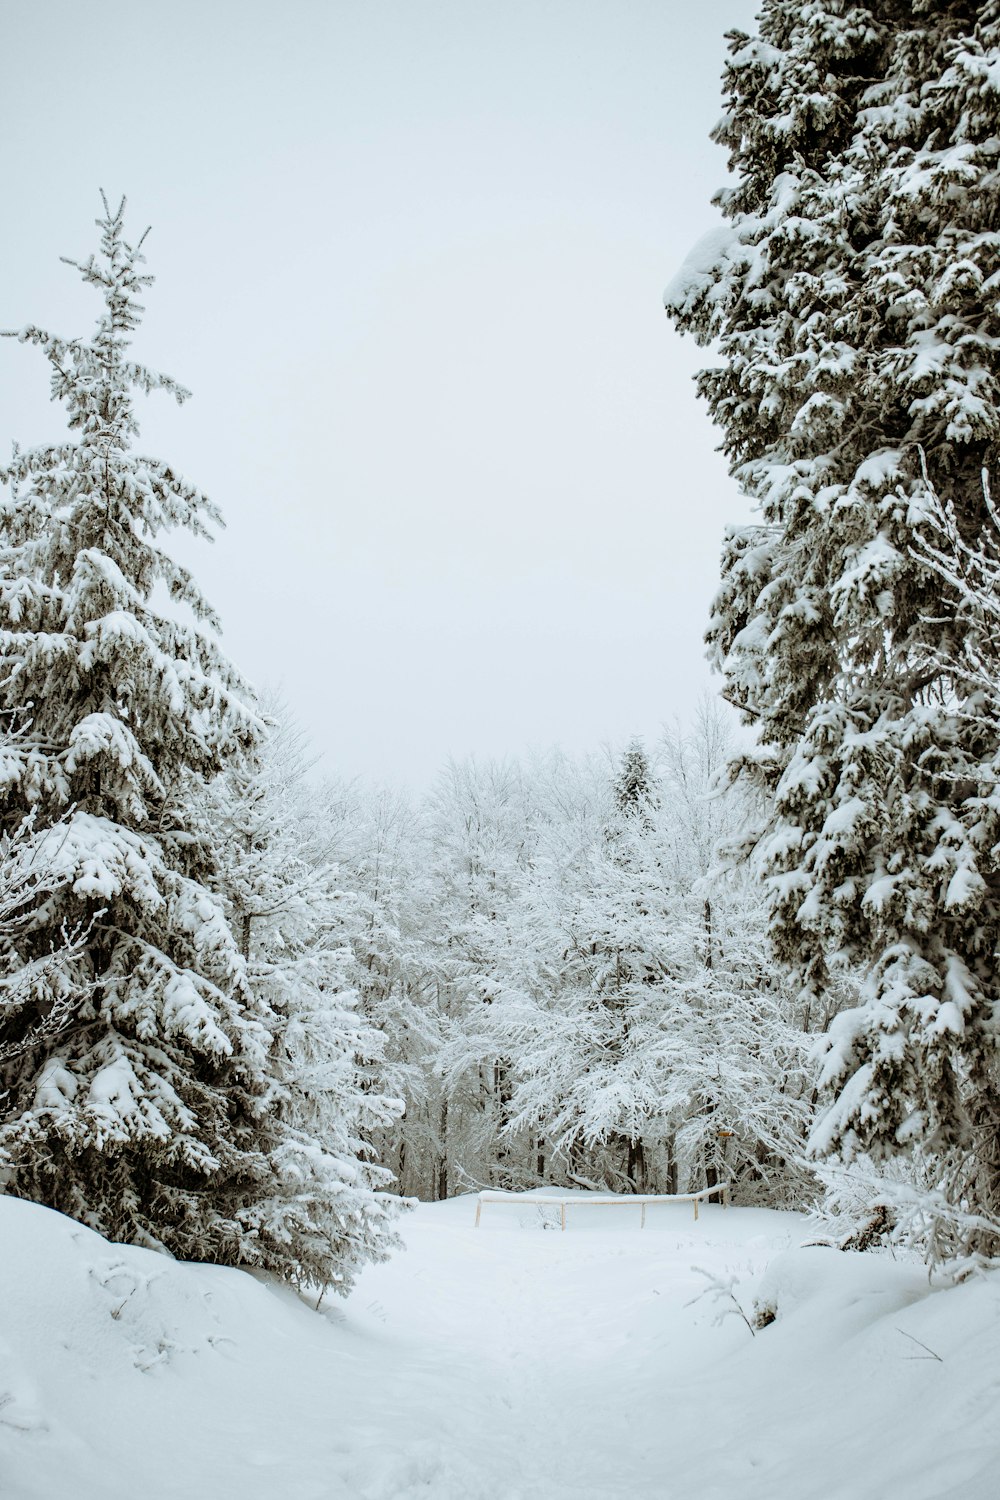 campo coberto de neve e árvores